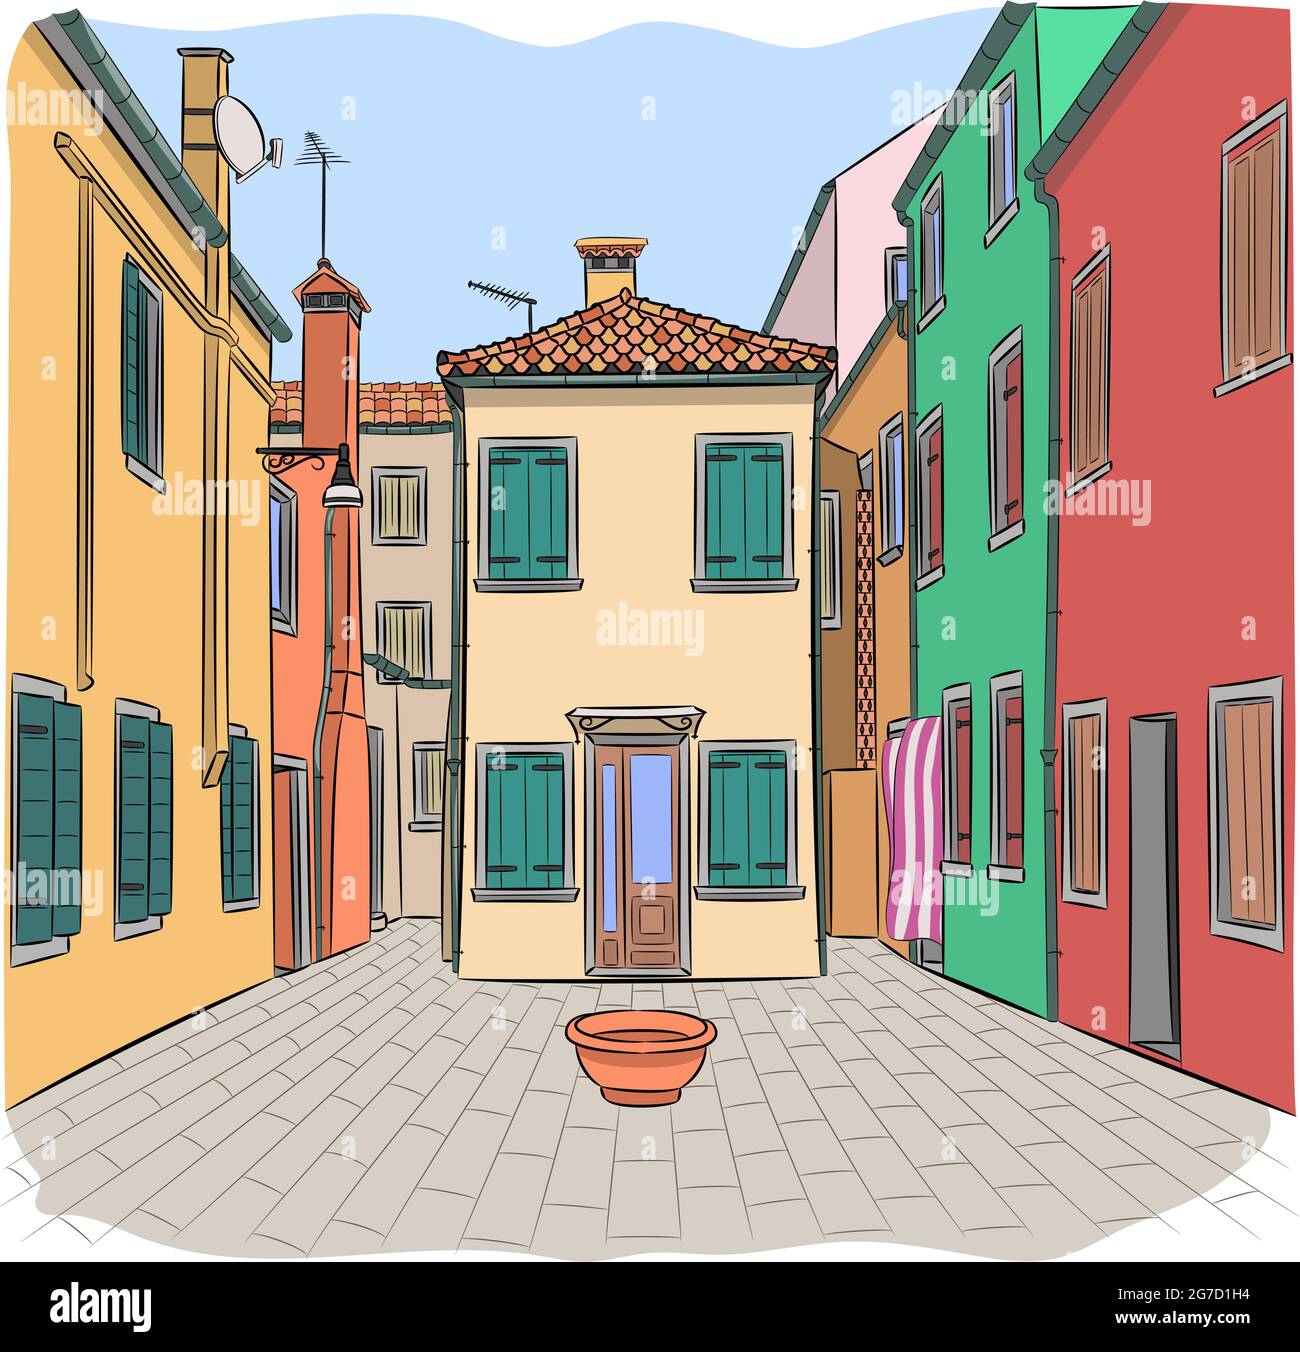 Façades colorées de maisons et cour traditionnelle sur l'île de Burano. Venise. Italie. Illustration de Vecteur